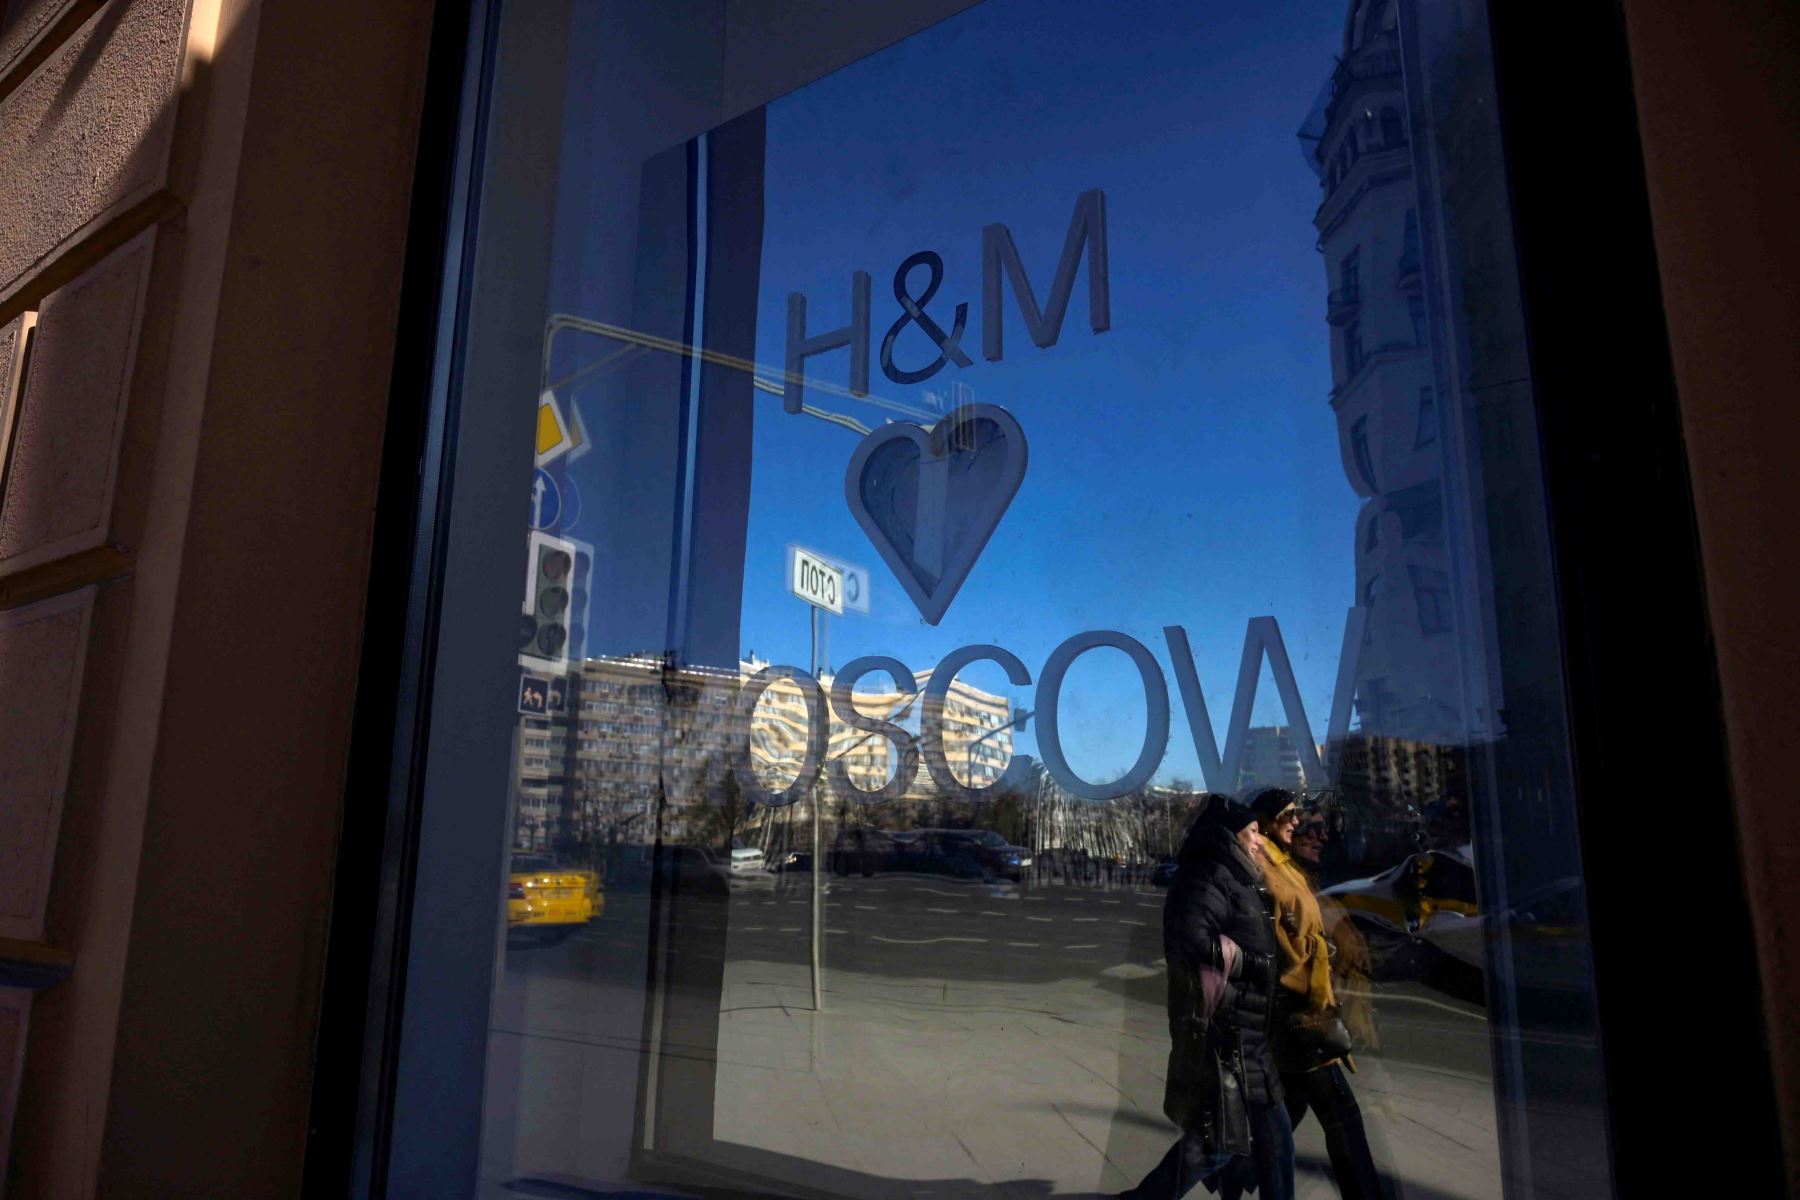 La multinacional sueca de tiendas de ropa H&M (Hennes & Mauritz), anunció que abandonará de manera progresiva ese país a raíz de la invasión de Ucrania. Foto: AFP